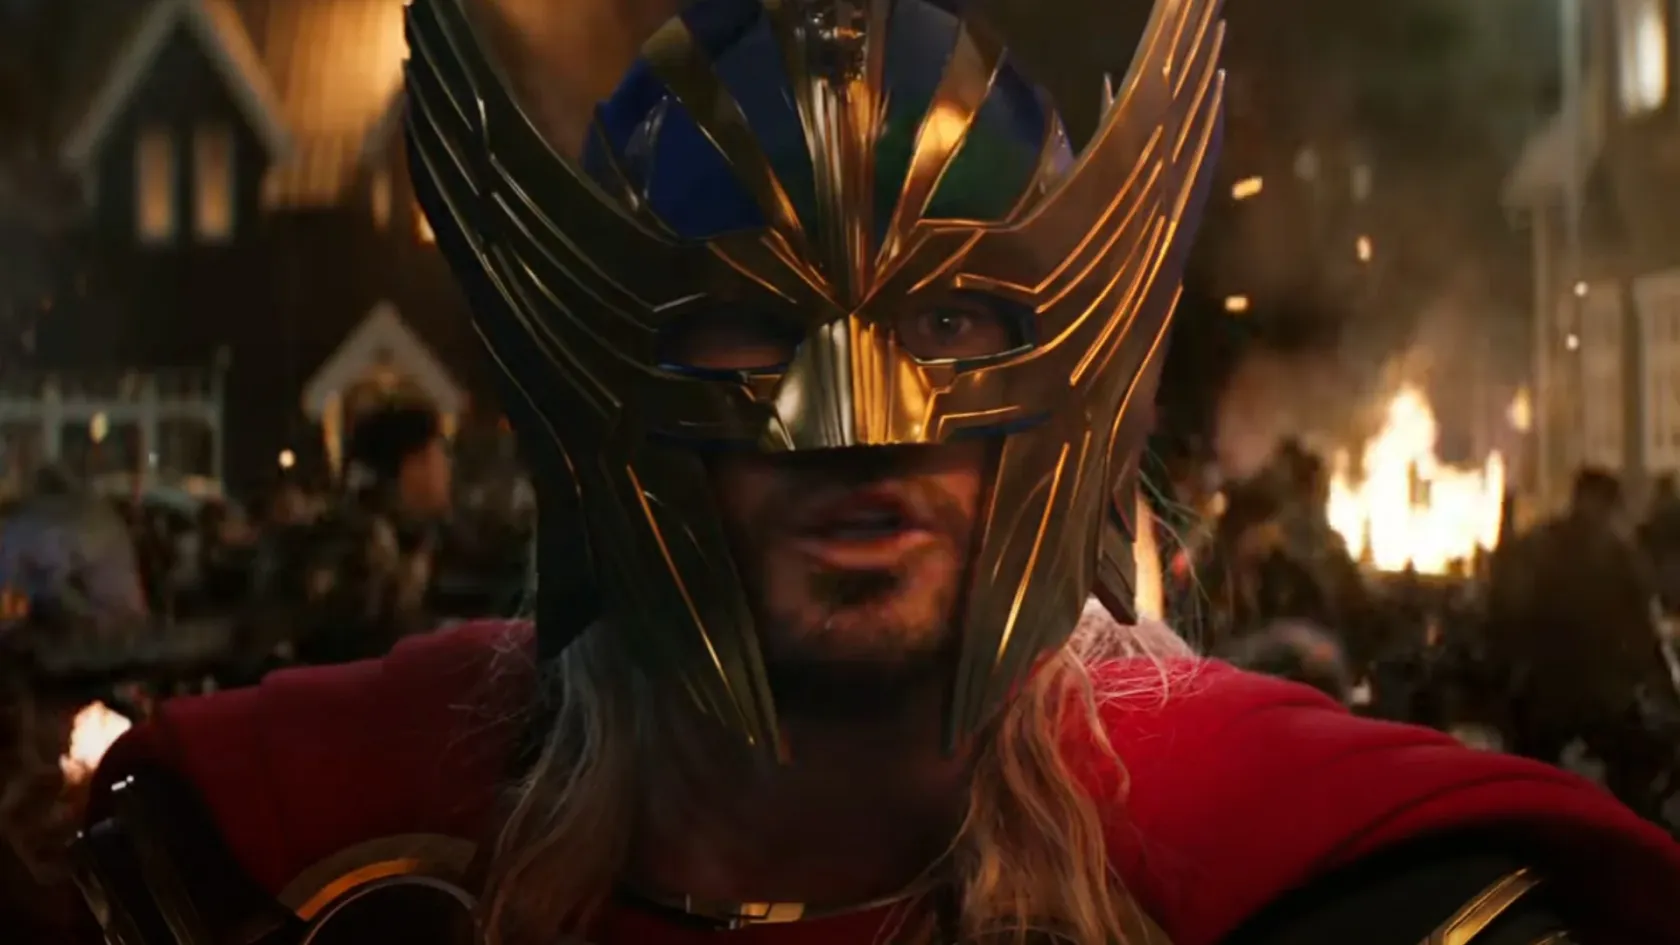 Isteni mészárlás, meztelenkedés és románc az új Thor-film trailerében